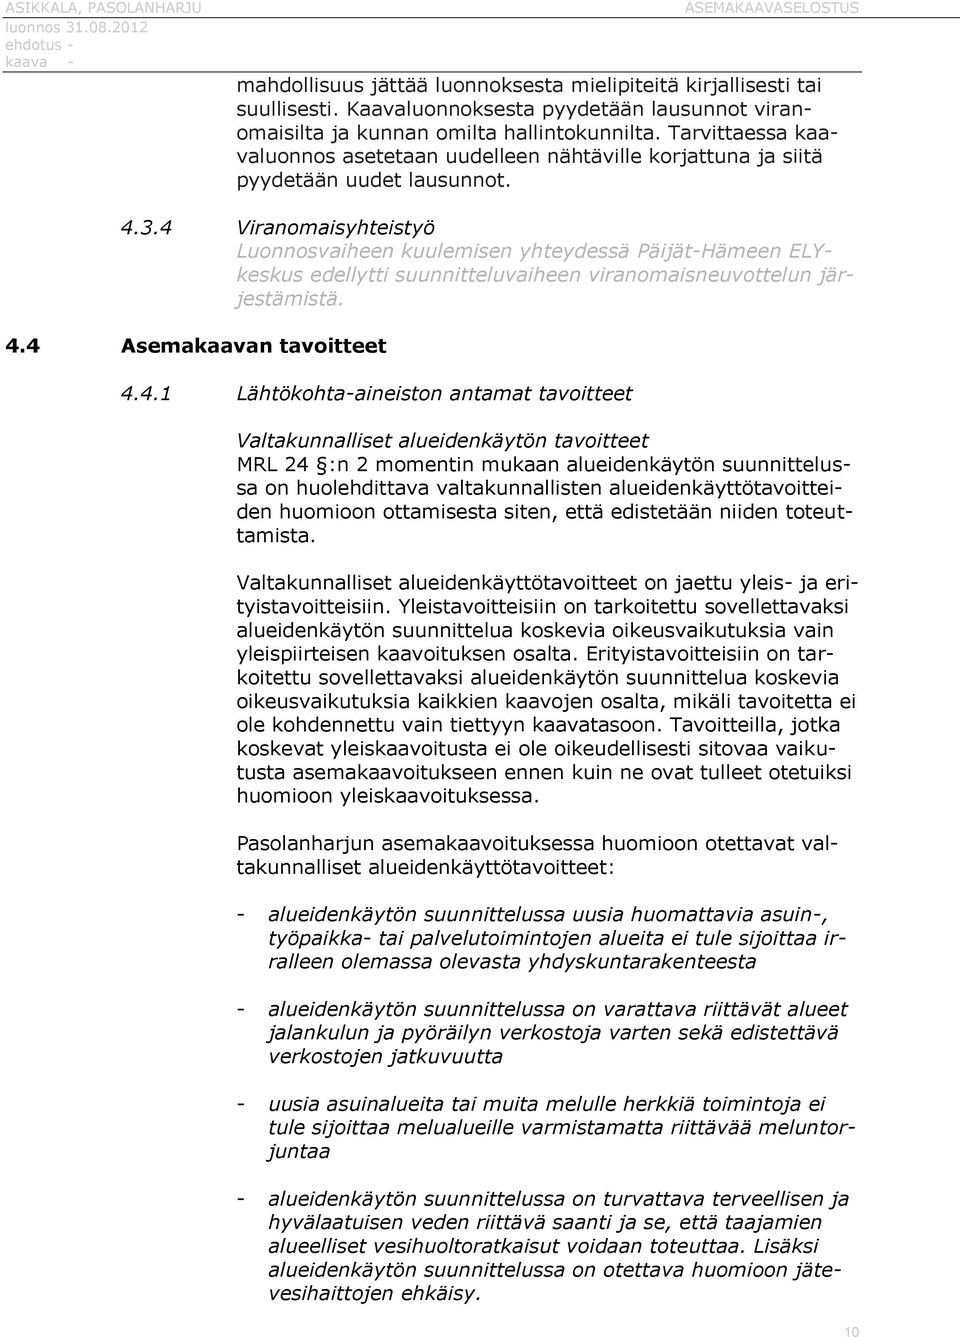 4 Viranomaisyhteistyö Luonnosvaiheen kuulemisen yhteydessä Päijät-Hämeen ELYkeskus edellytti suunnitteluvaiheen viranomaisneuvottelun järjestämistä. 4.4 Asemakaavan tavoitteet 4.4.1